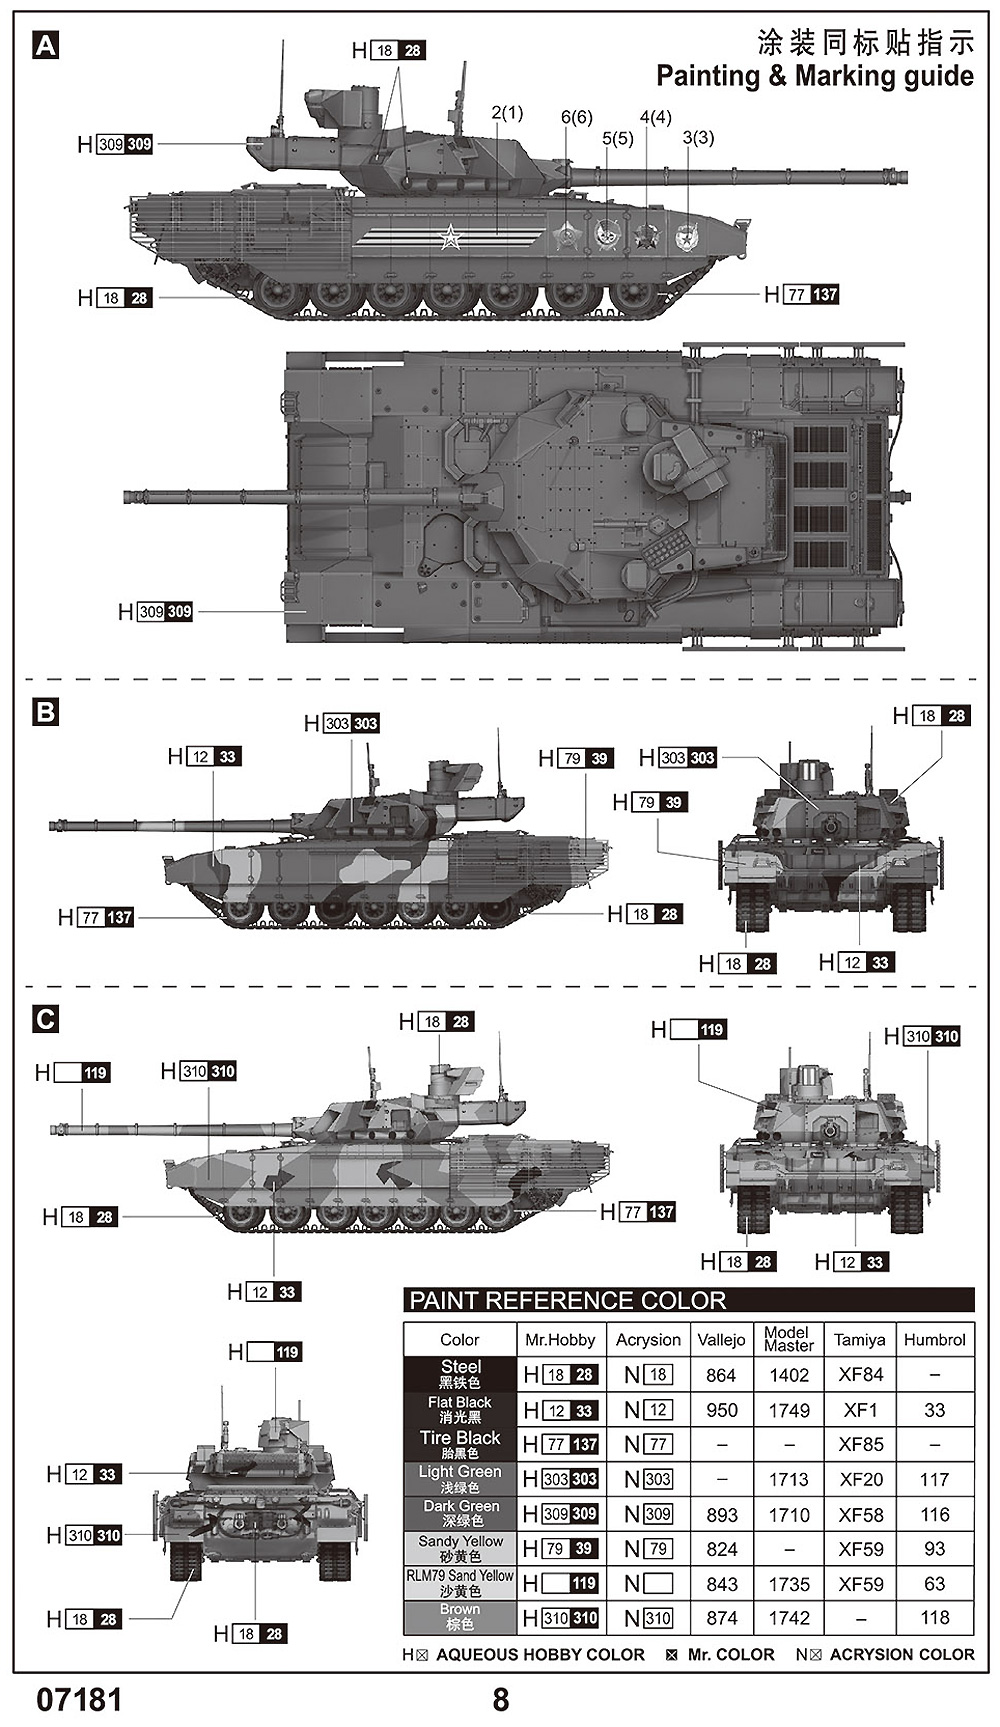 ロシア連邦軍 T-14 主力戦車 プラモデル (トランペッター 1/72 AFVシリーズ No.07181) 商品画像_1